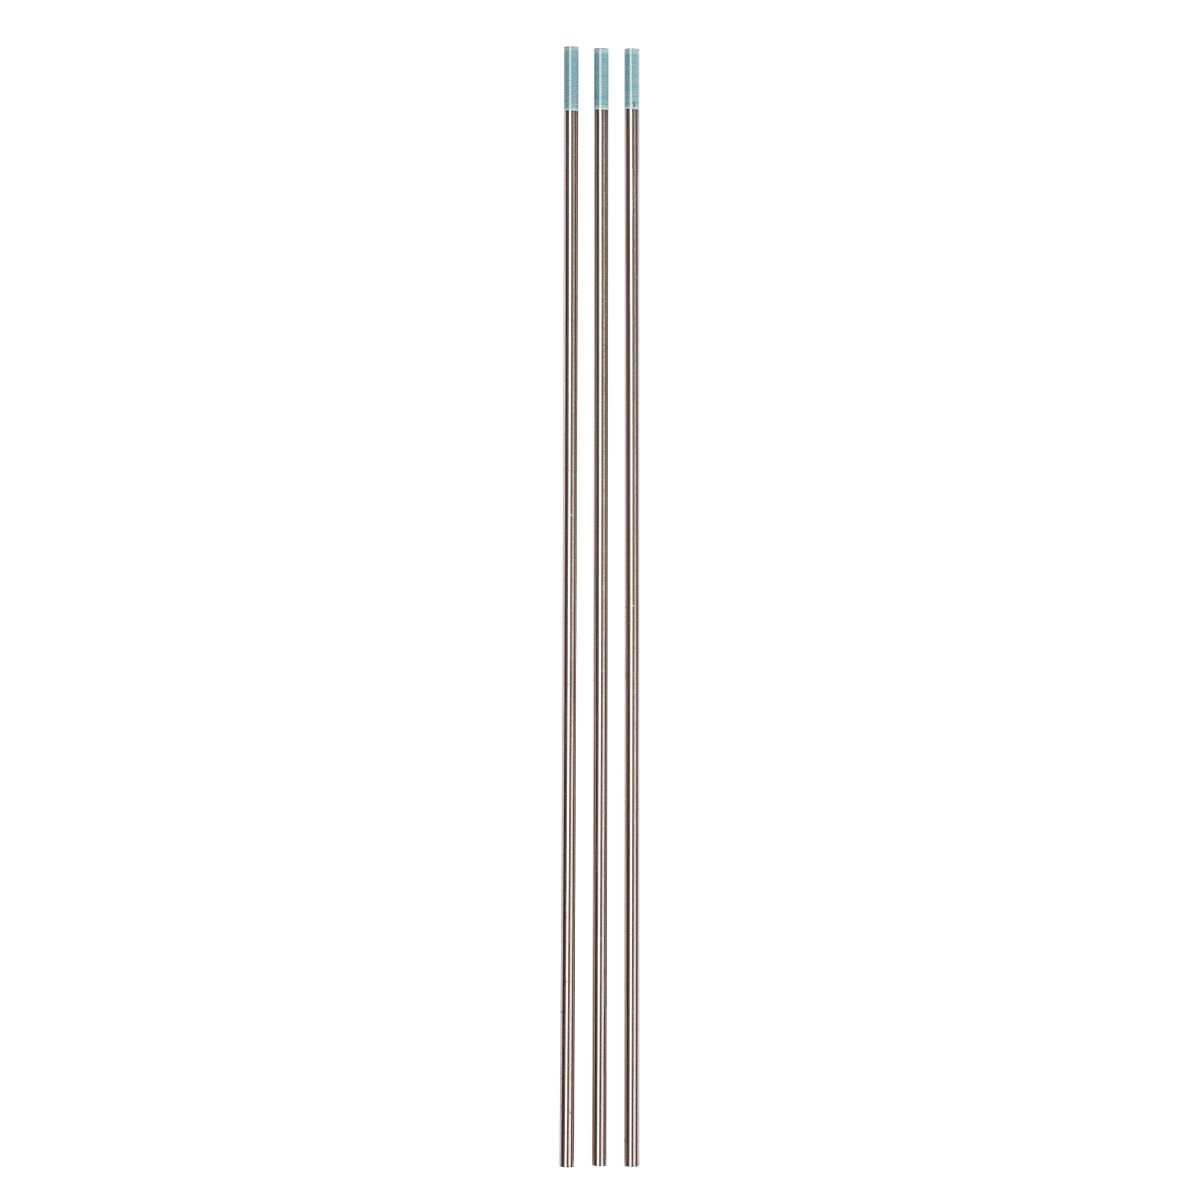 Schweisskraft Wolframelektroden WR 2 türkis | Ø 3,2 x 175 mm | 10 Stück